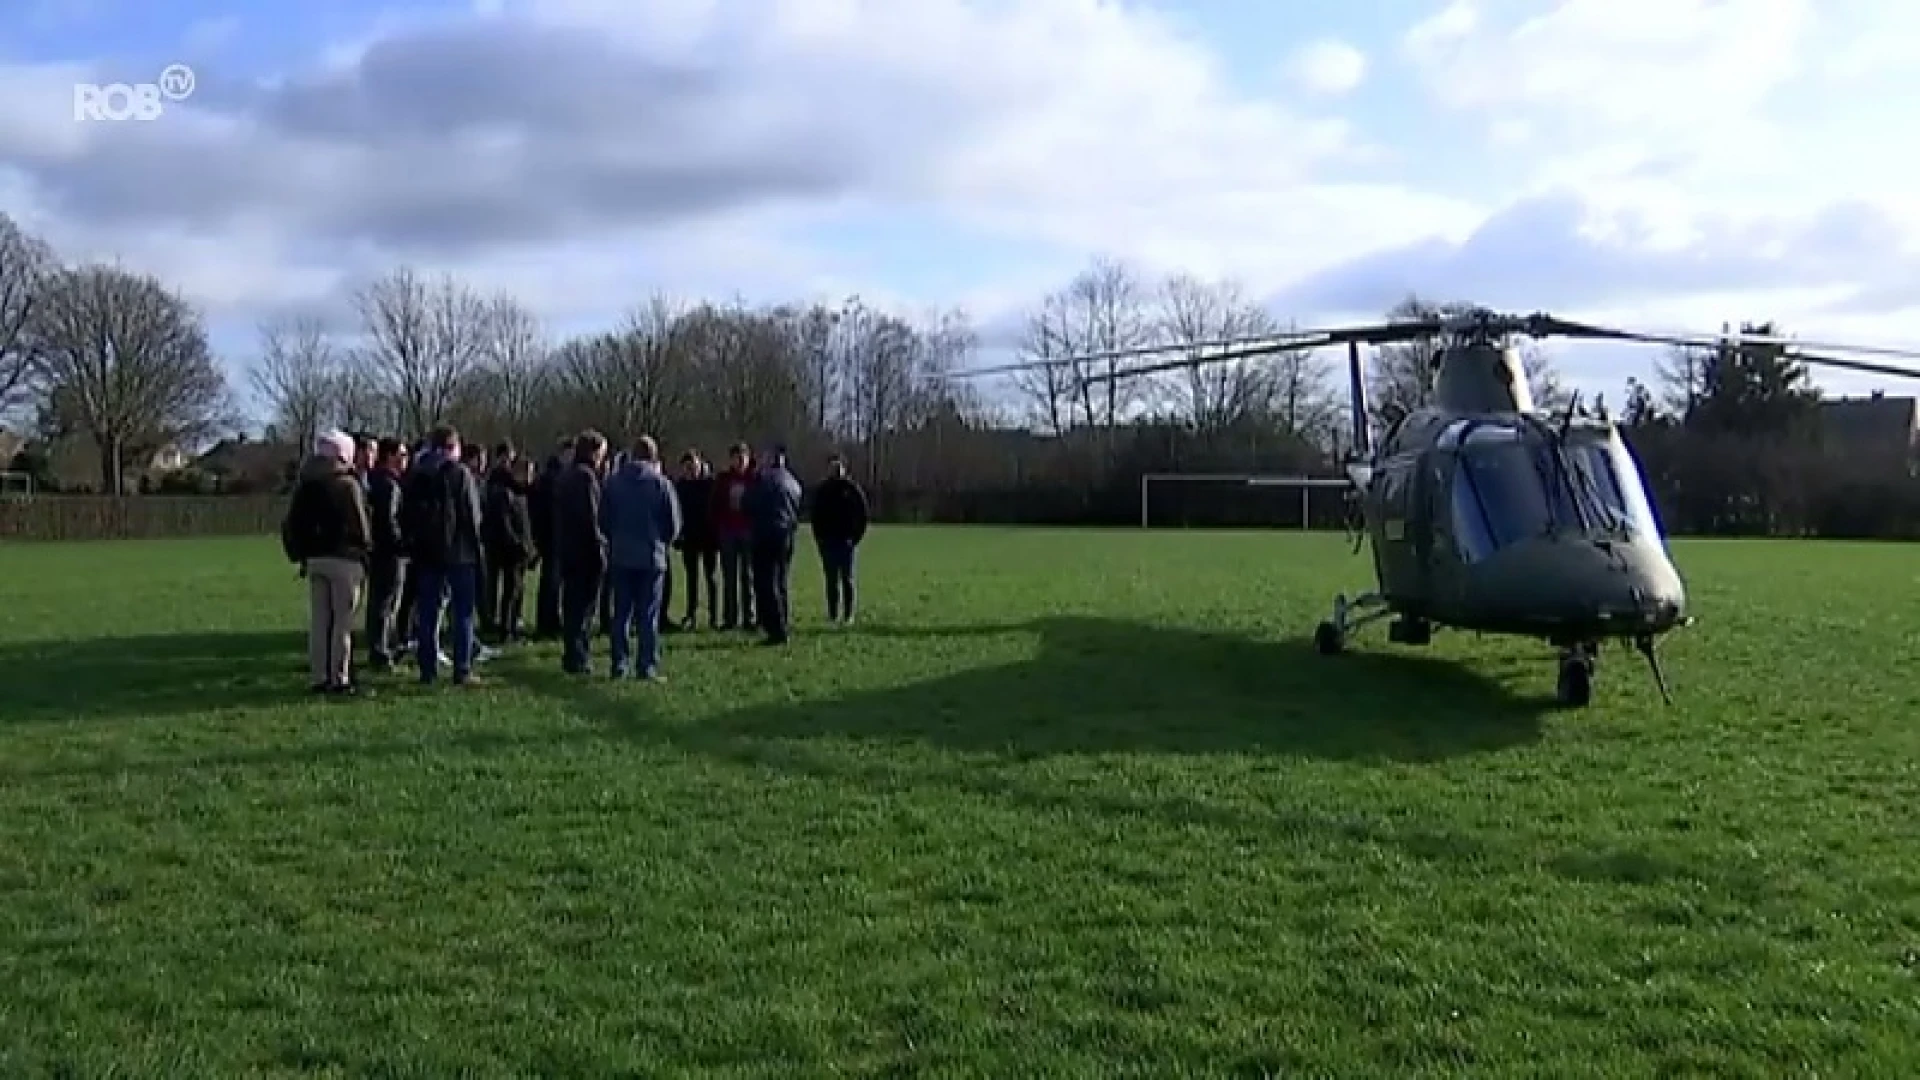 Legerhelikopter landt op voetbalveld van Don Bosco Haacht